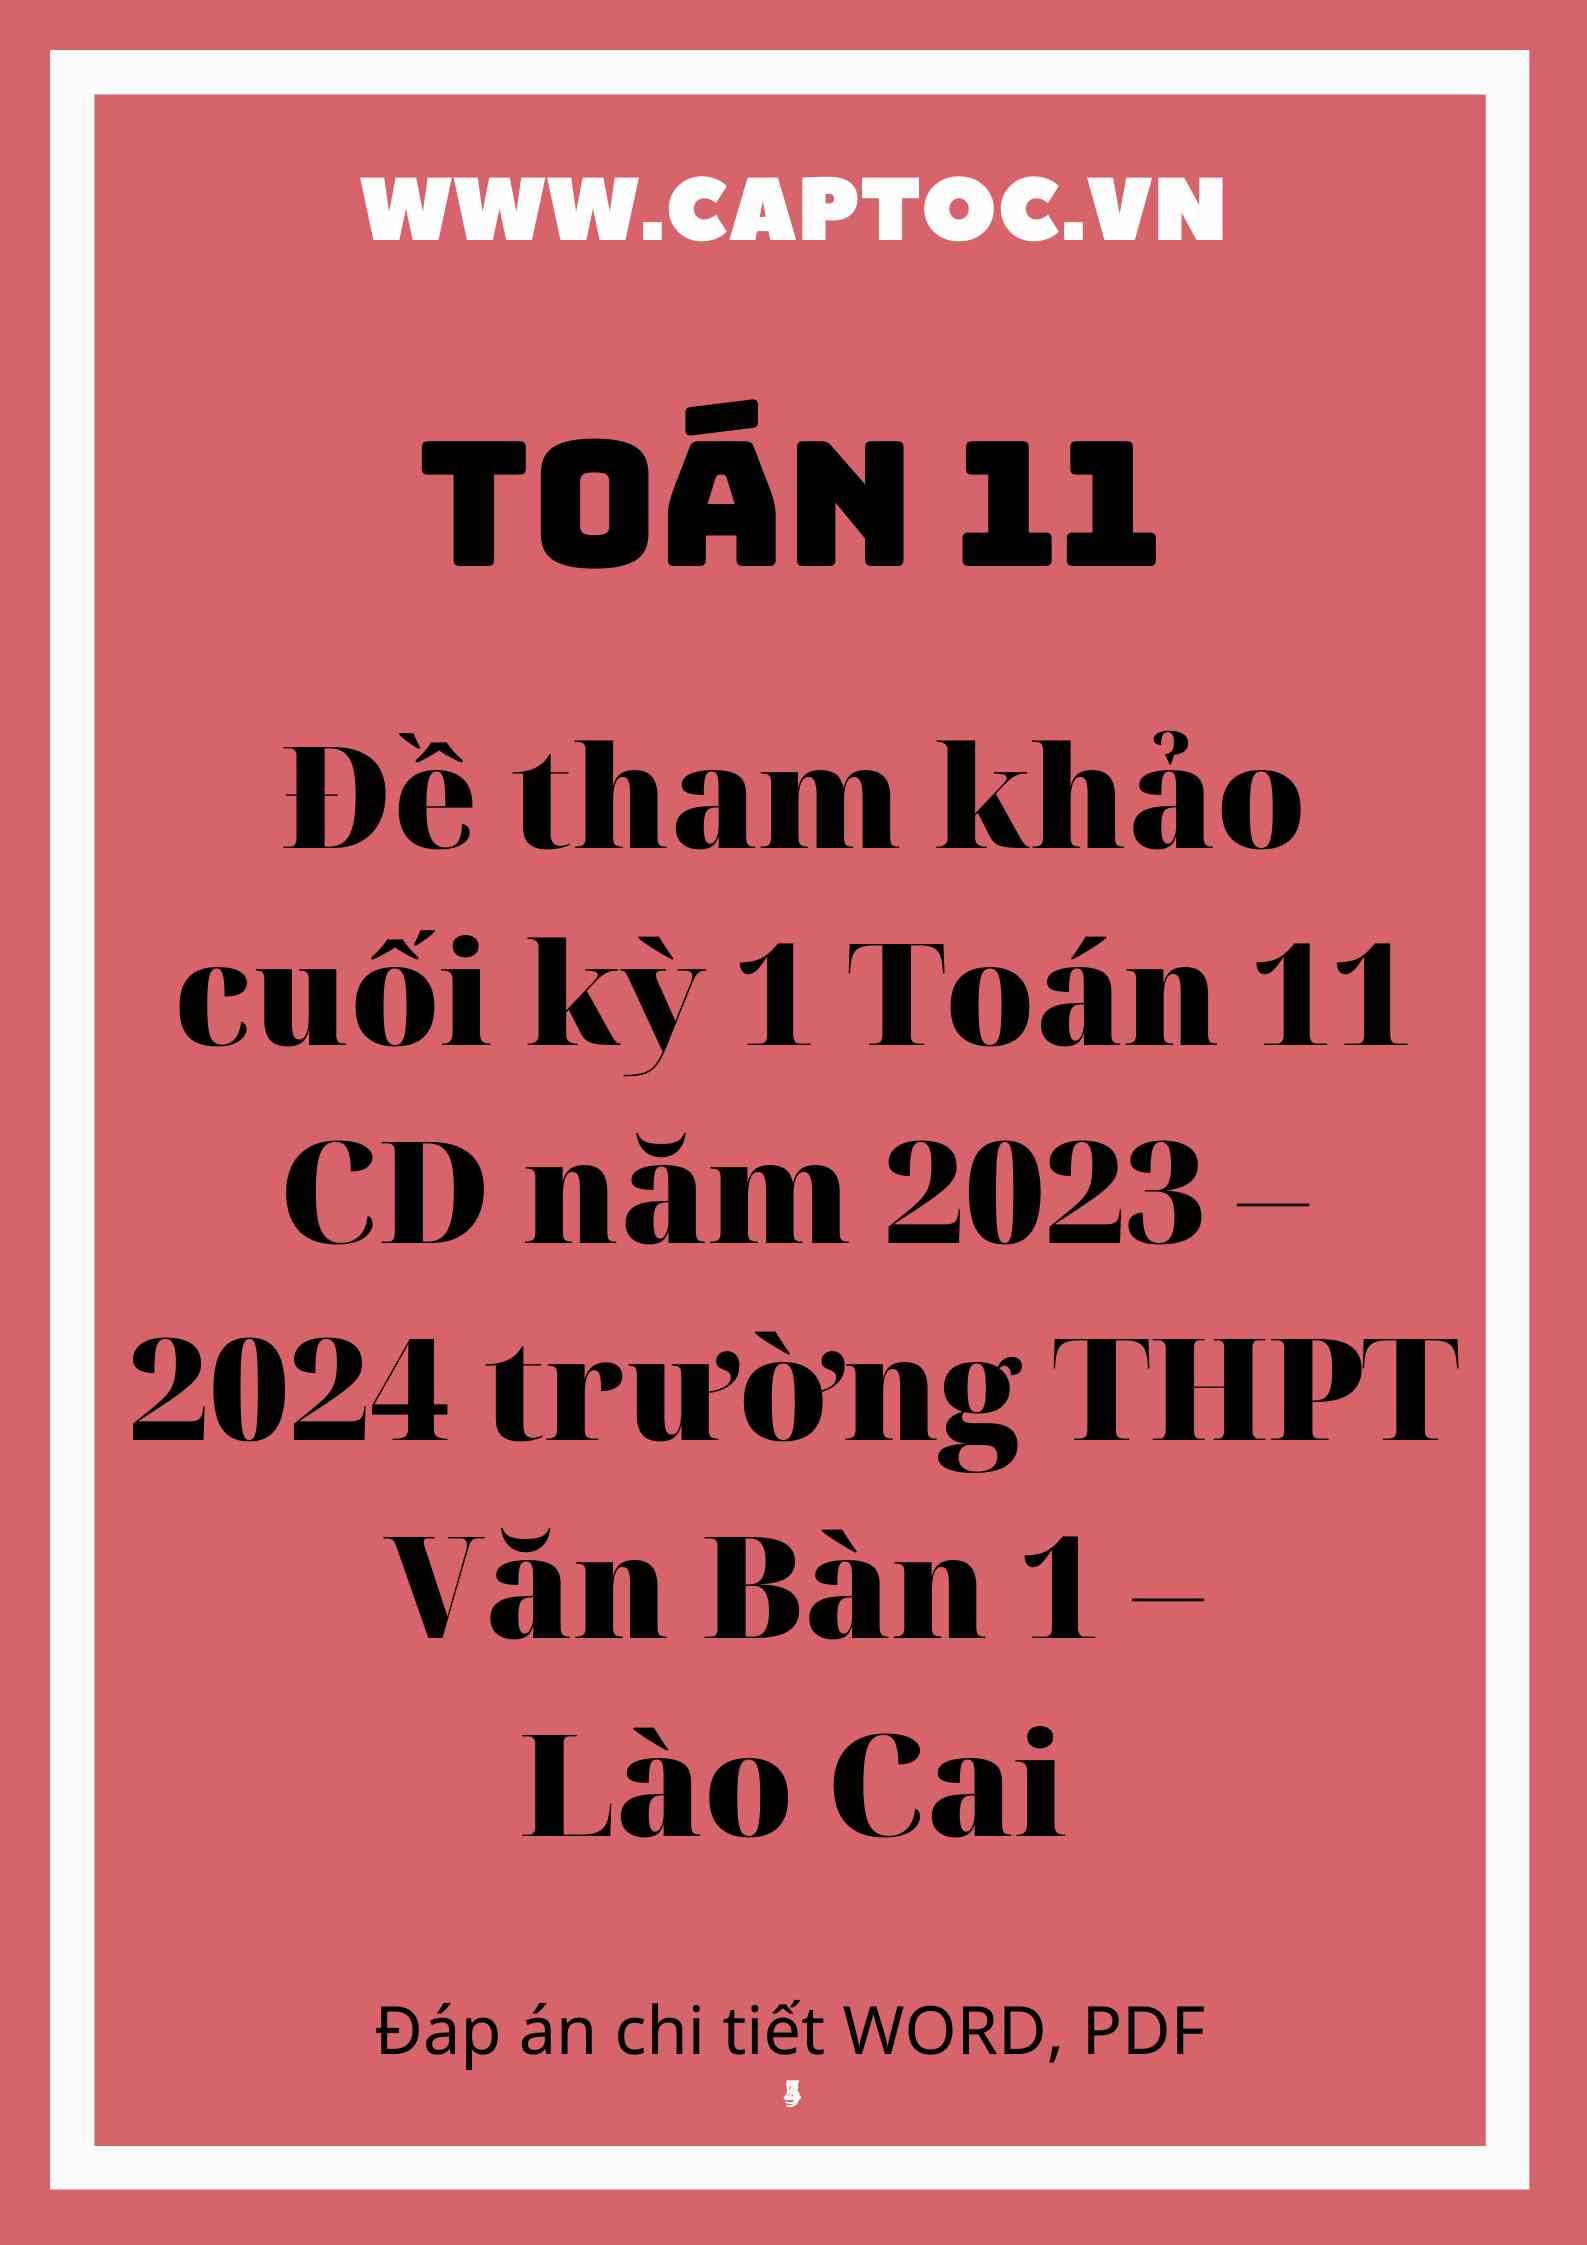 Đề tham khảo cuối kỳ 1 Toán 11 CD năm 2023 – 2024 trường THPT Văn Bàn 1 – Lào Cai